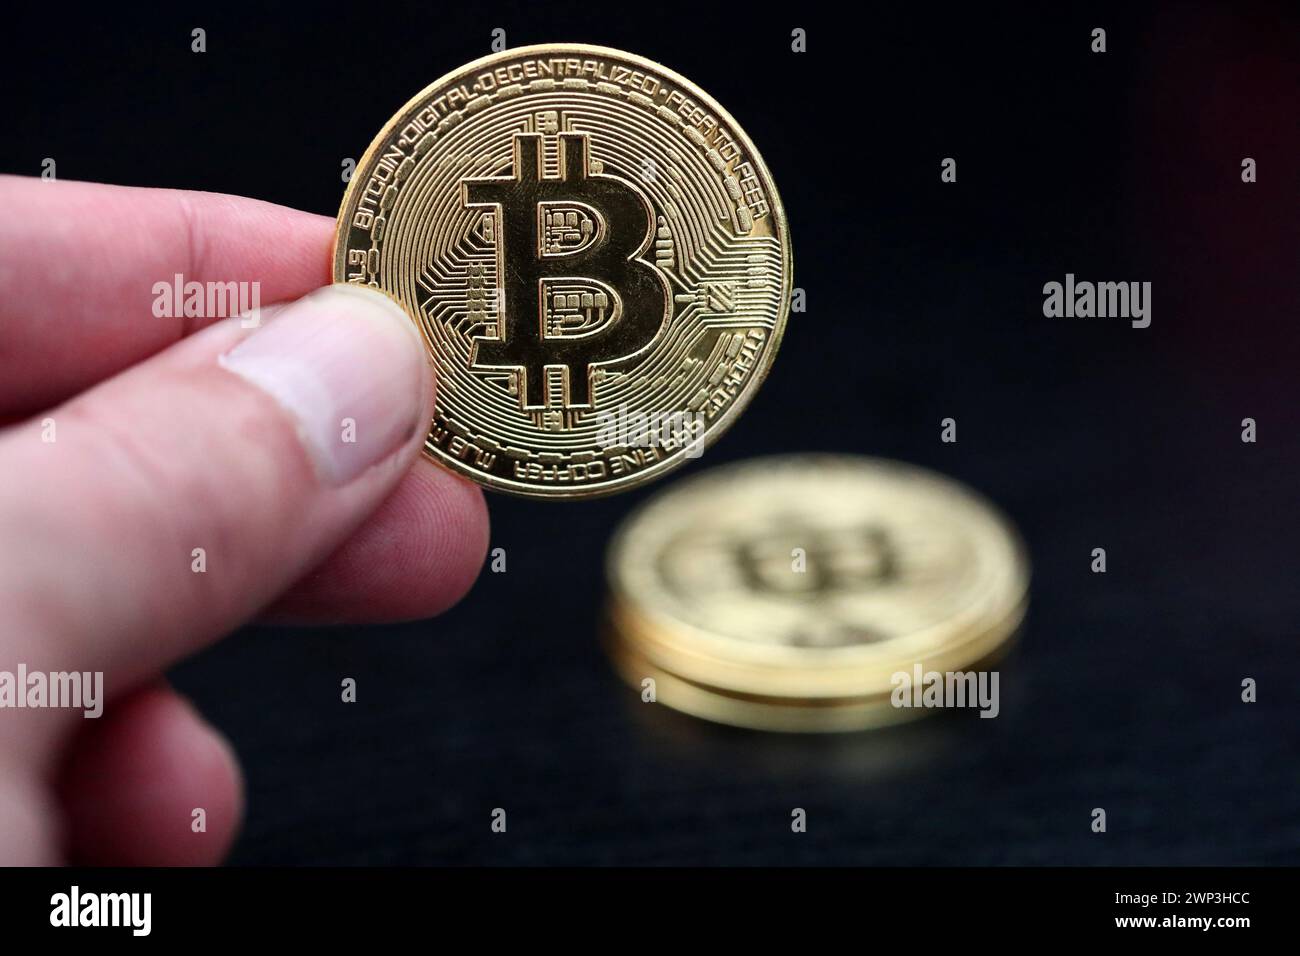 Symbolbild:  Eine Hand hält einen Bitcoin - Der Bitcoin steht hoch im Kurs. Selbst Finanzdienstleister wie Paypal wollen die Kryptowährung als Zahlung Stock Photo